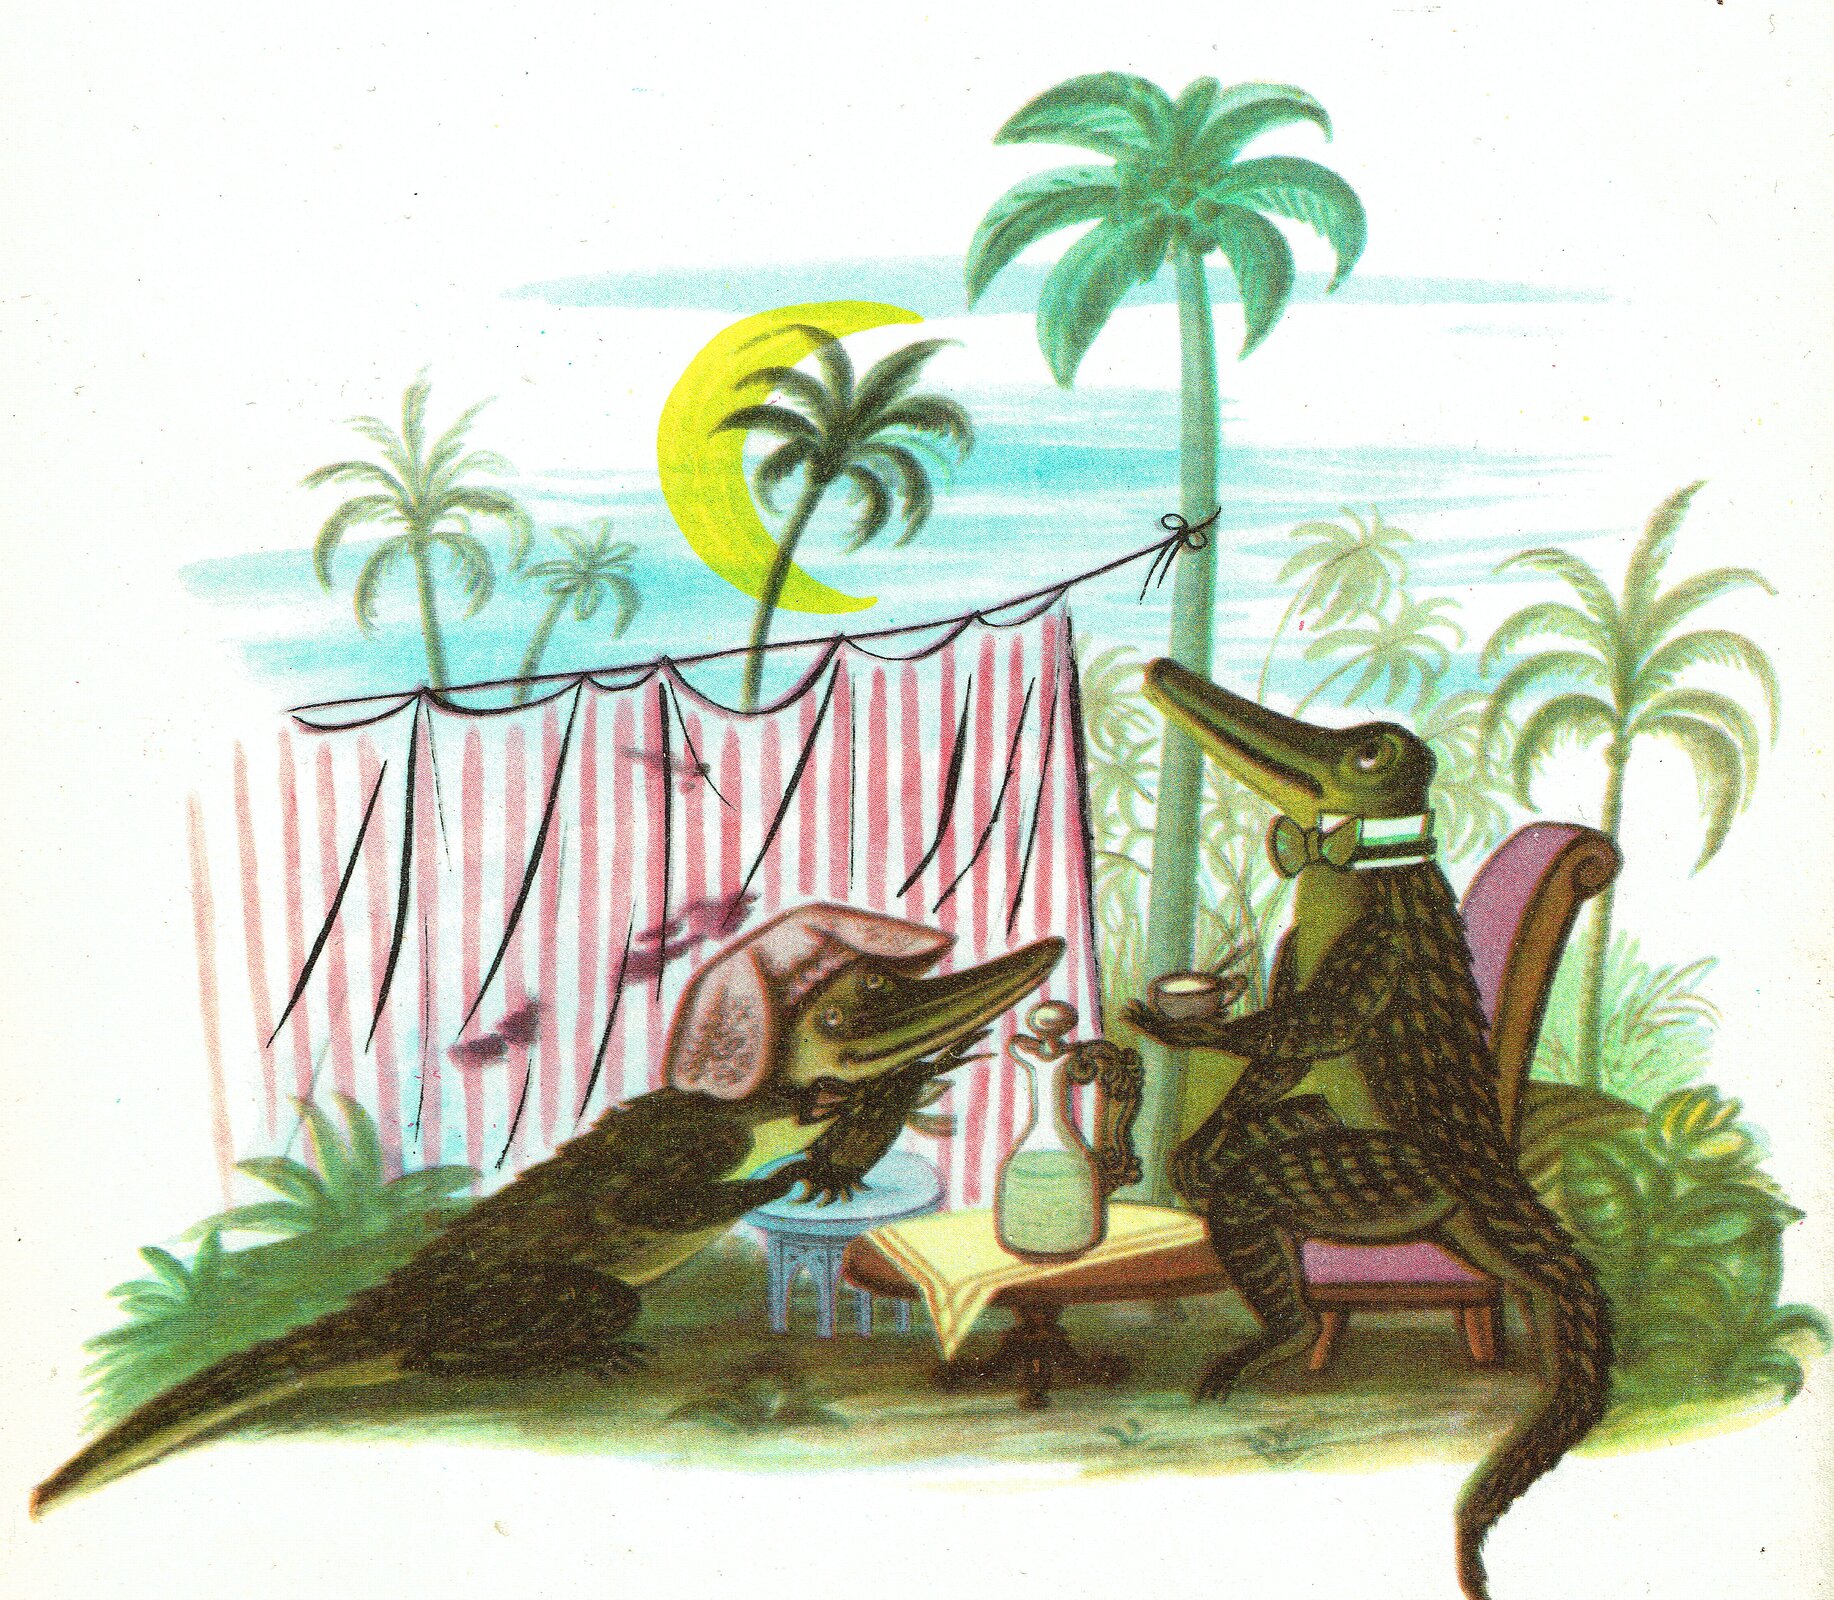 Ilustracja przedstawia grafikę z książki dla dzieci Juliana Tuwima "Wiersze dla dzieci", ukazująca piknik dwóch krokodyli. Jeden z nich siedzi na leżaku. W tle widoczne jest słońce oraz palmy. Na jednej z palm zawieszona jest linka z biało-czerwonym materiałem.